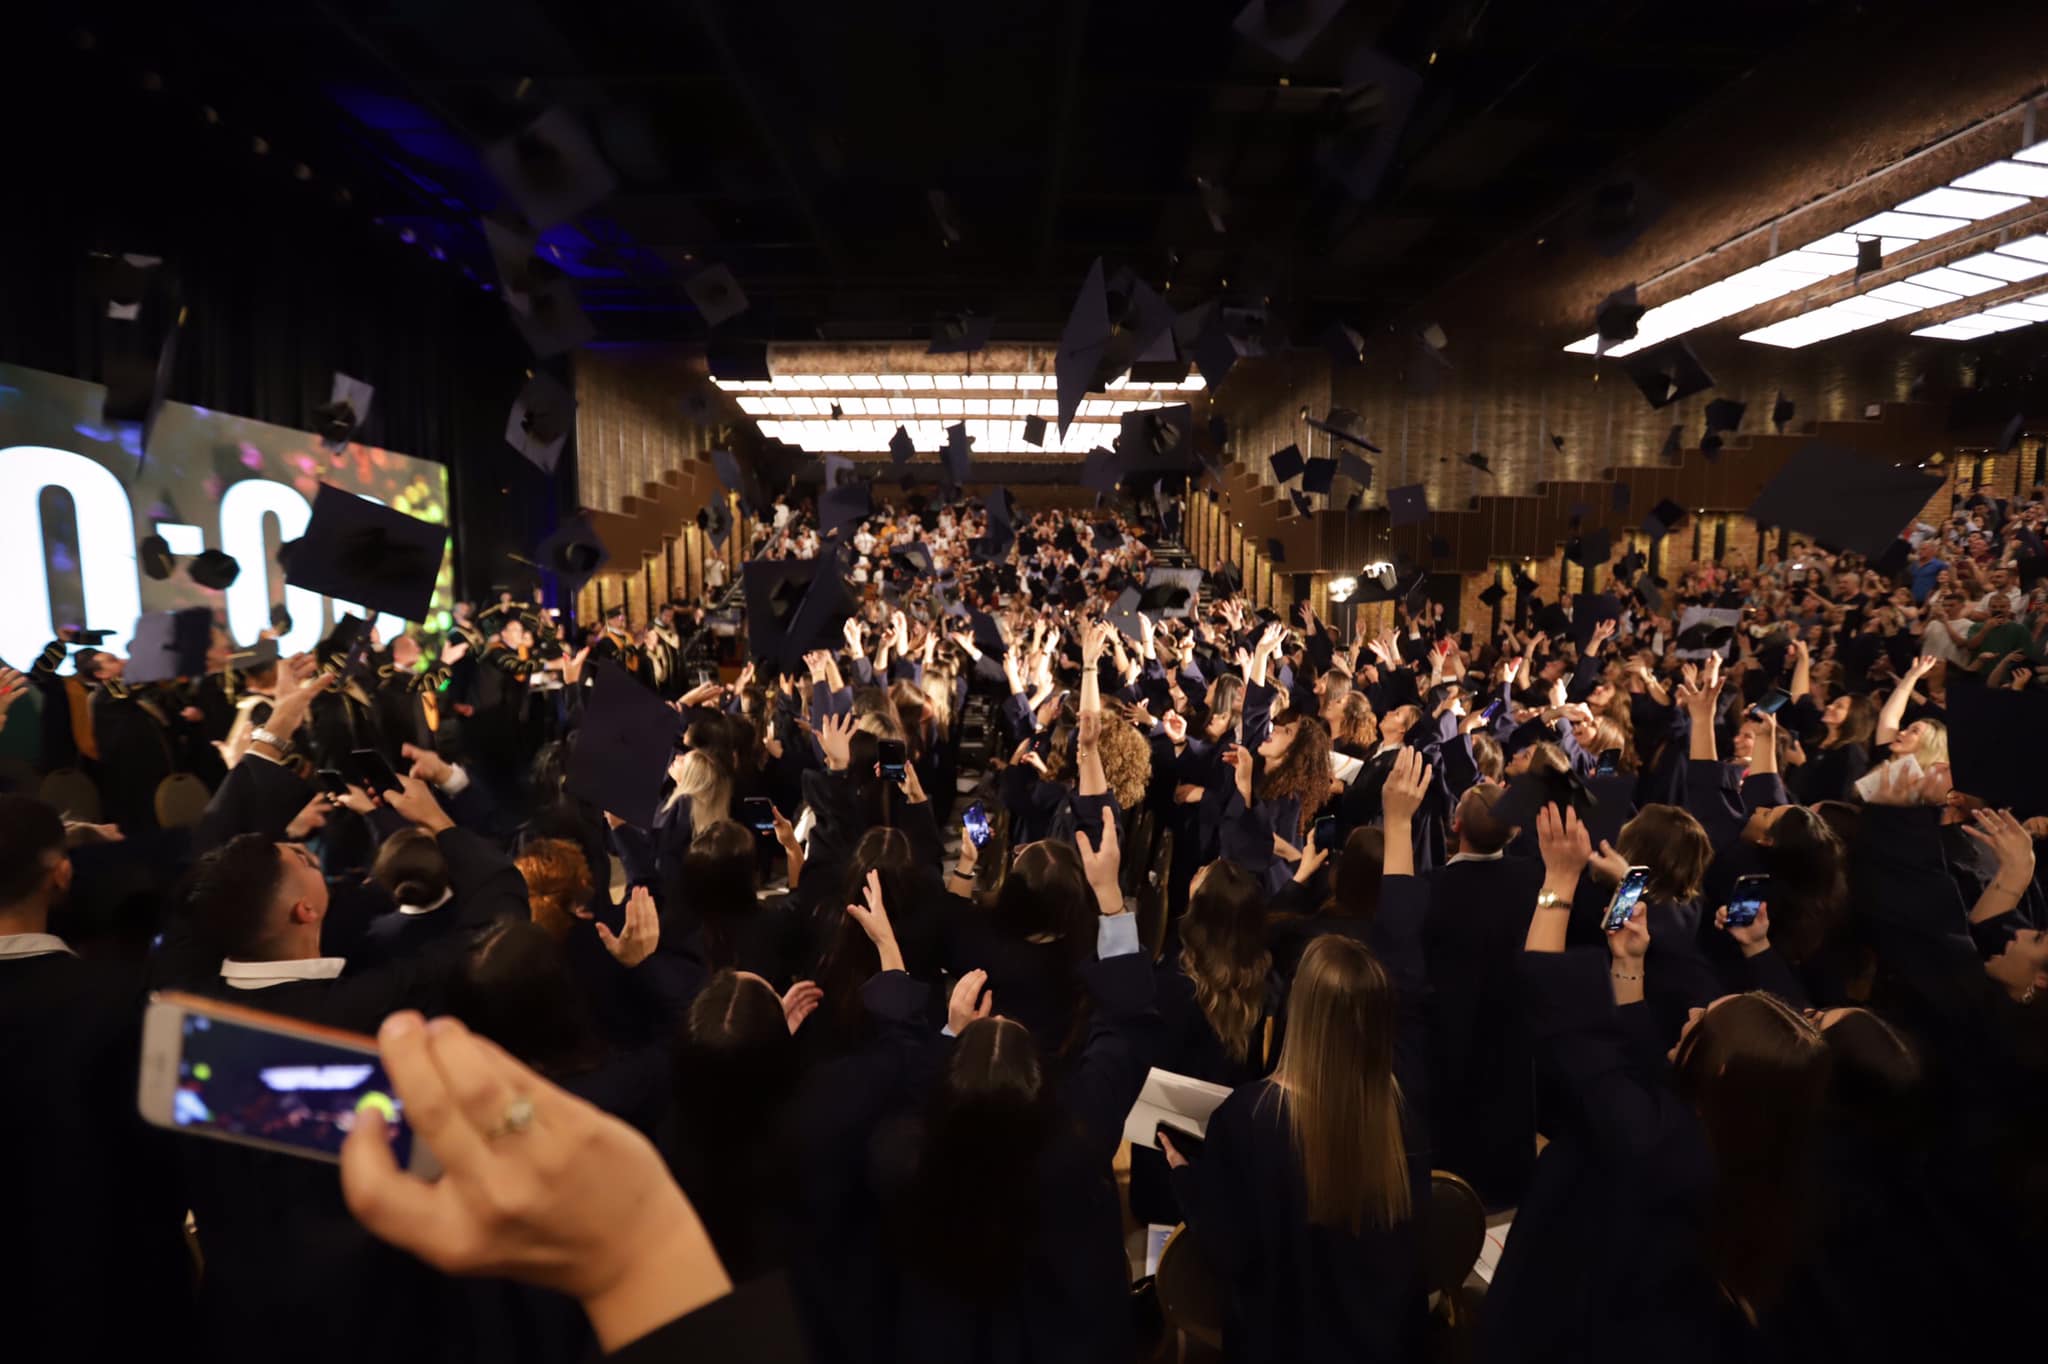 UBT suksesshëm përmbyll një nga organizimet më madhështore të ceremonisë së gradimit të studentëve